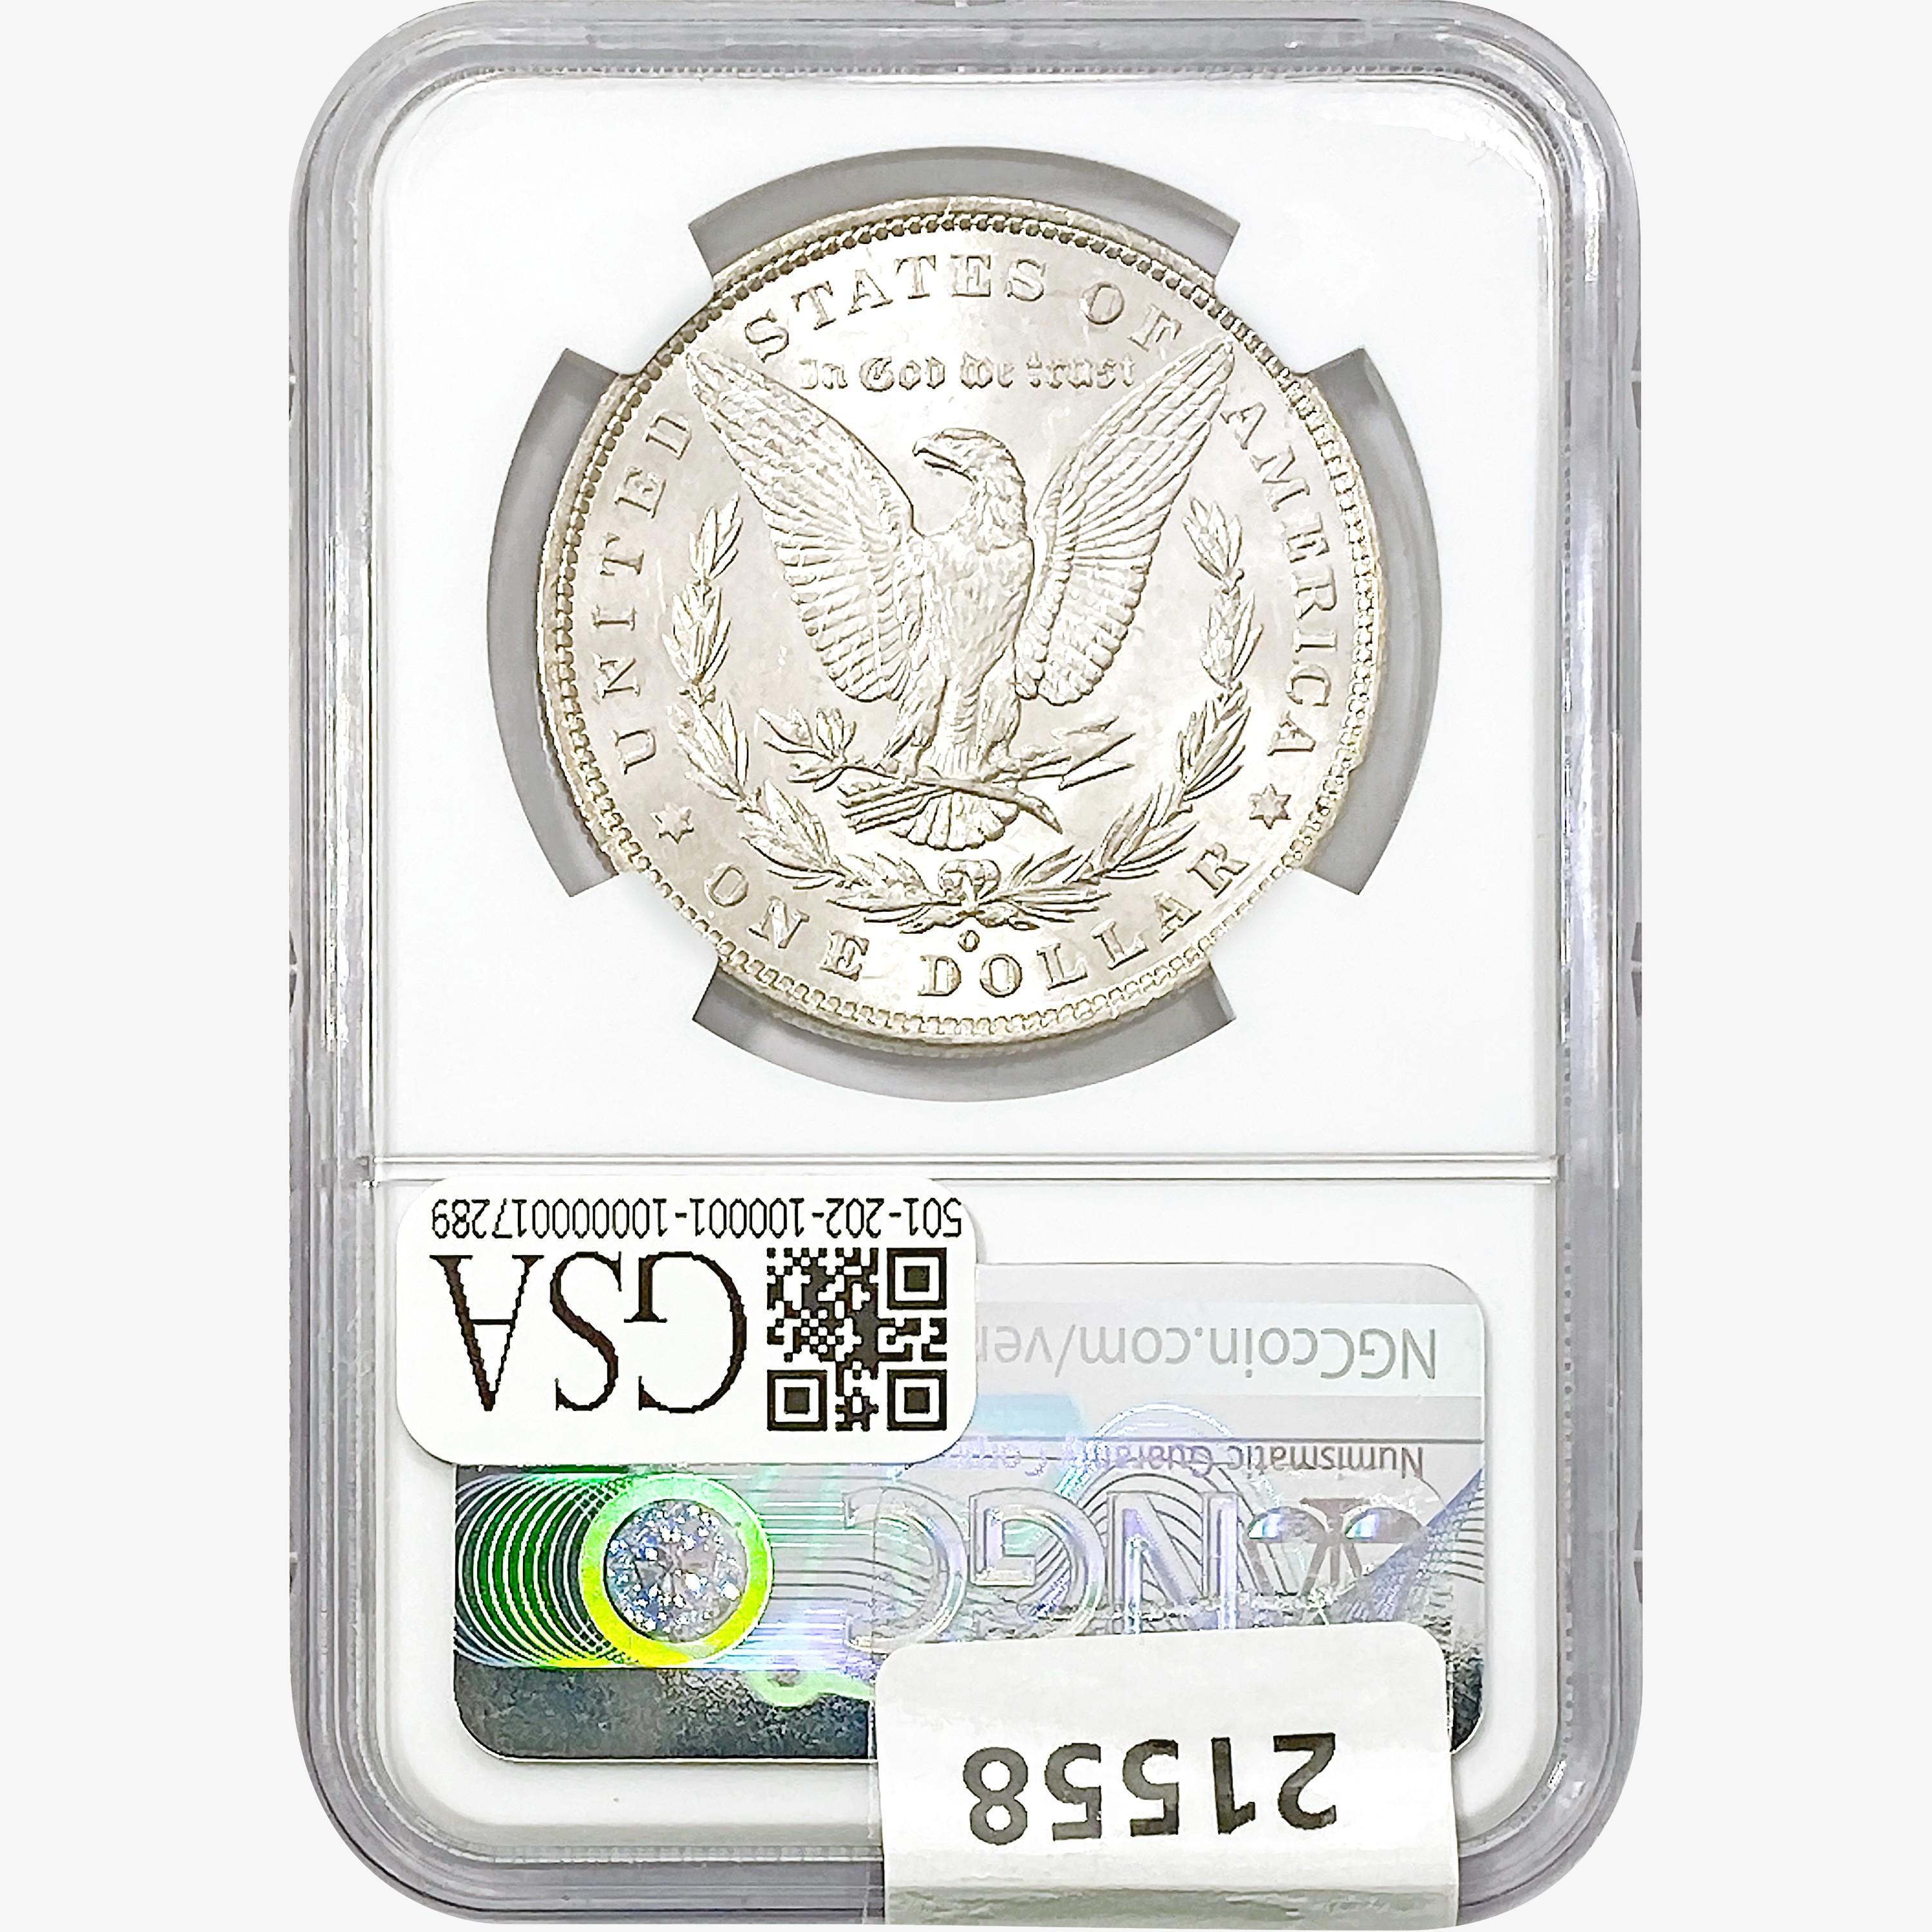 1881-O Morgan Silver Dollar NGC AU58